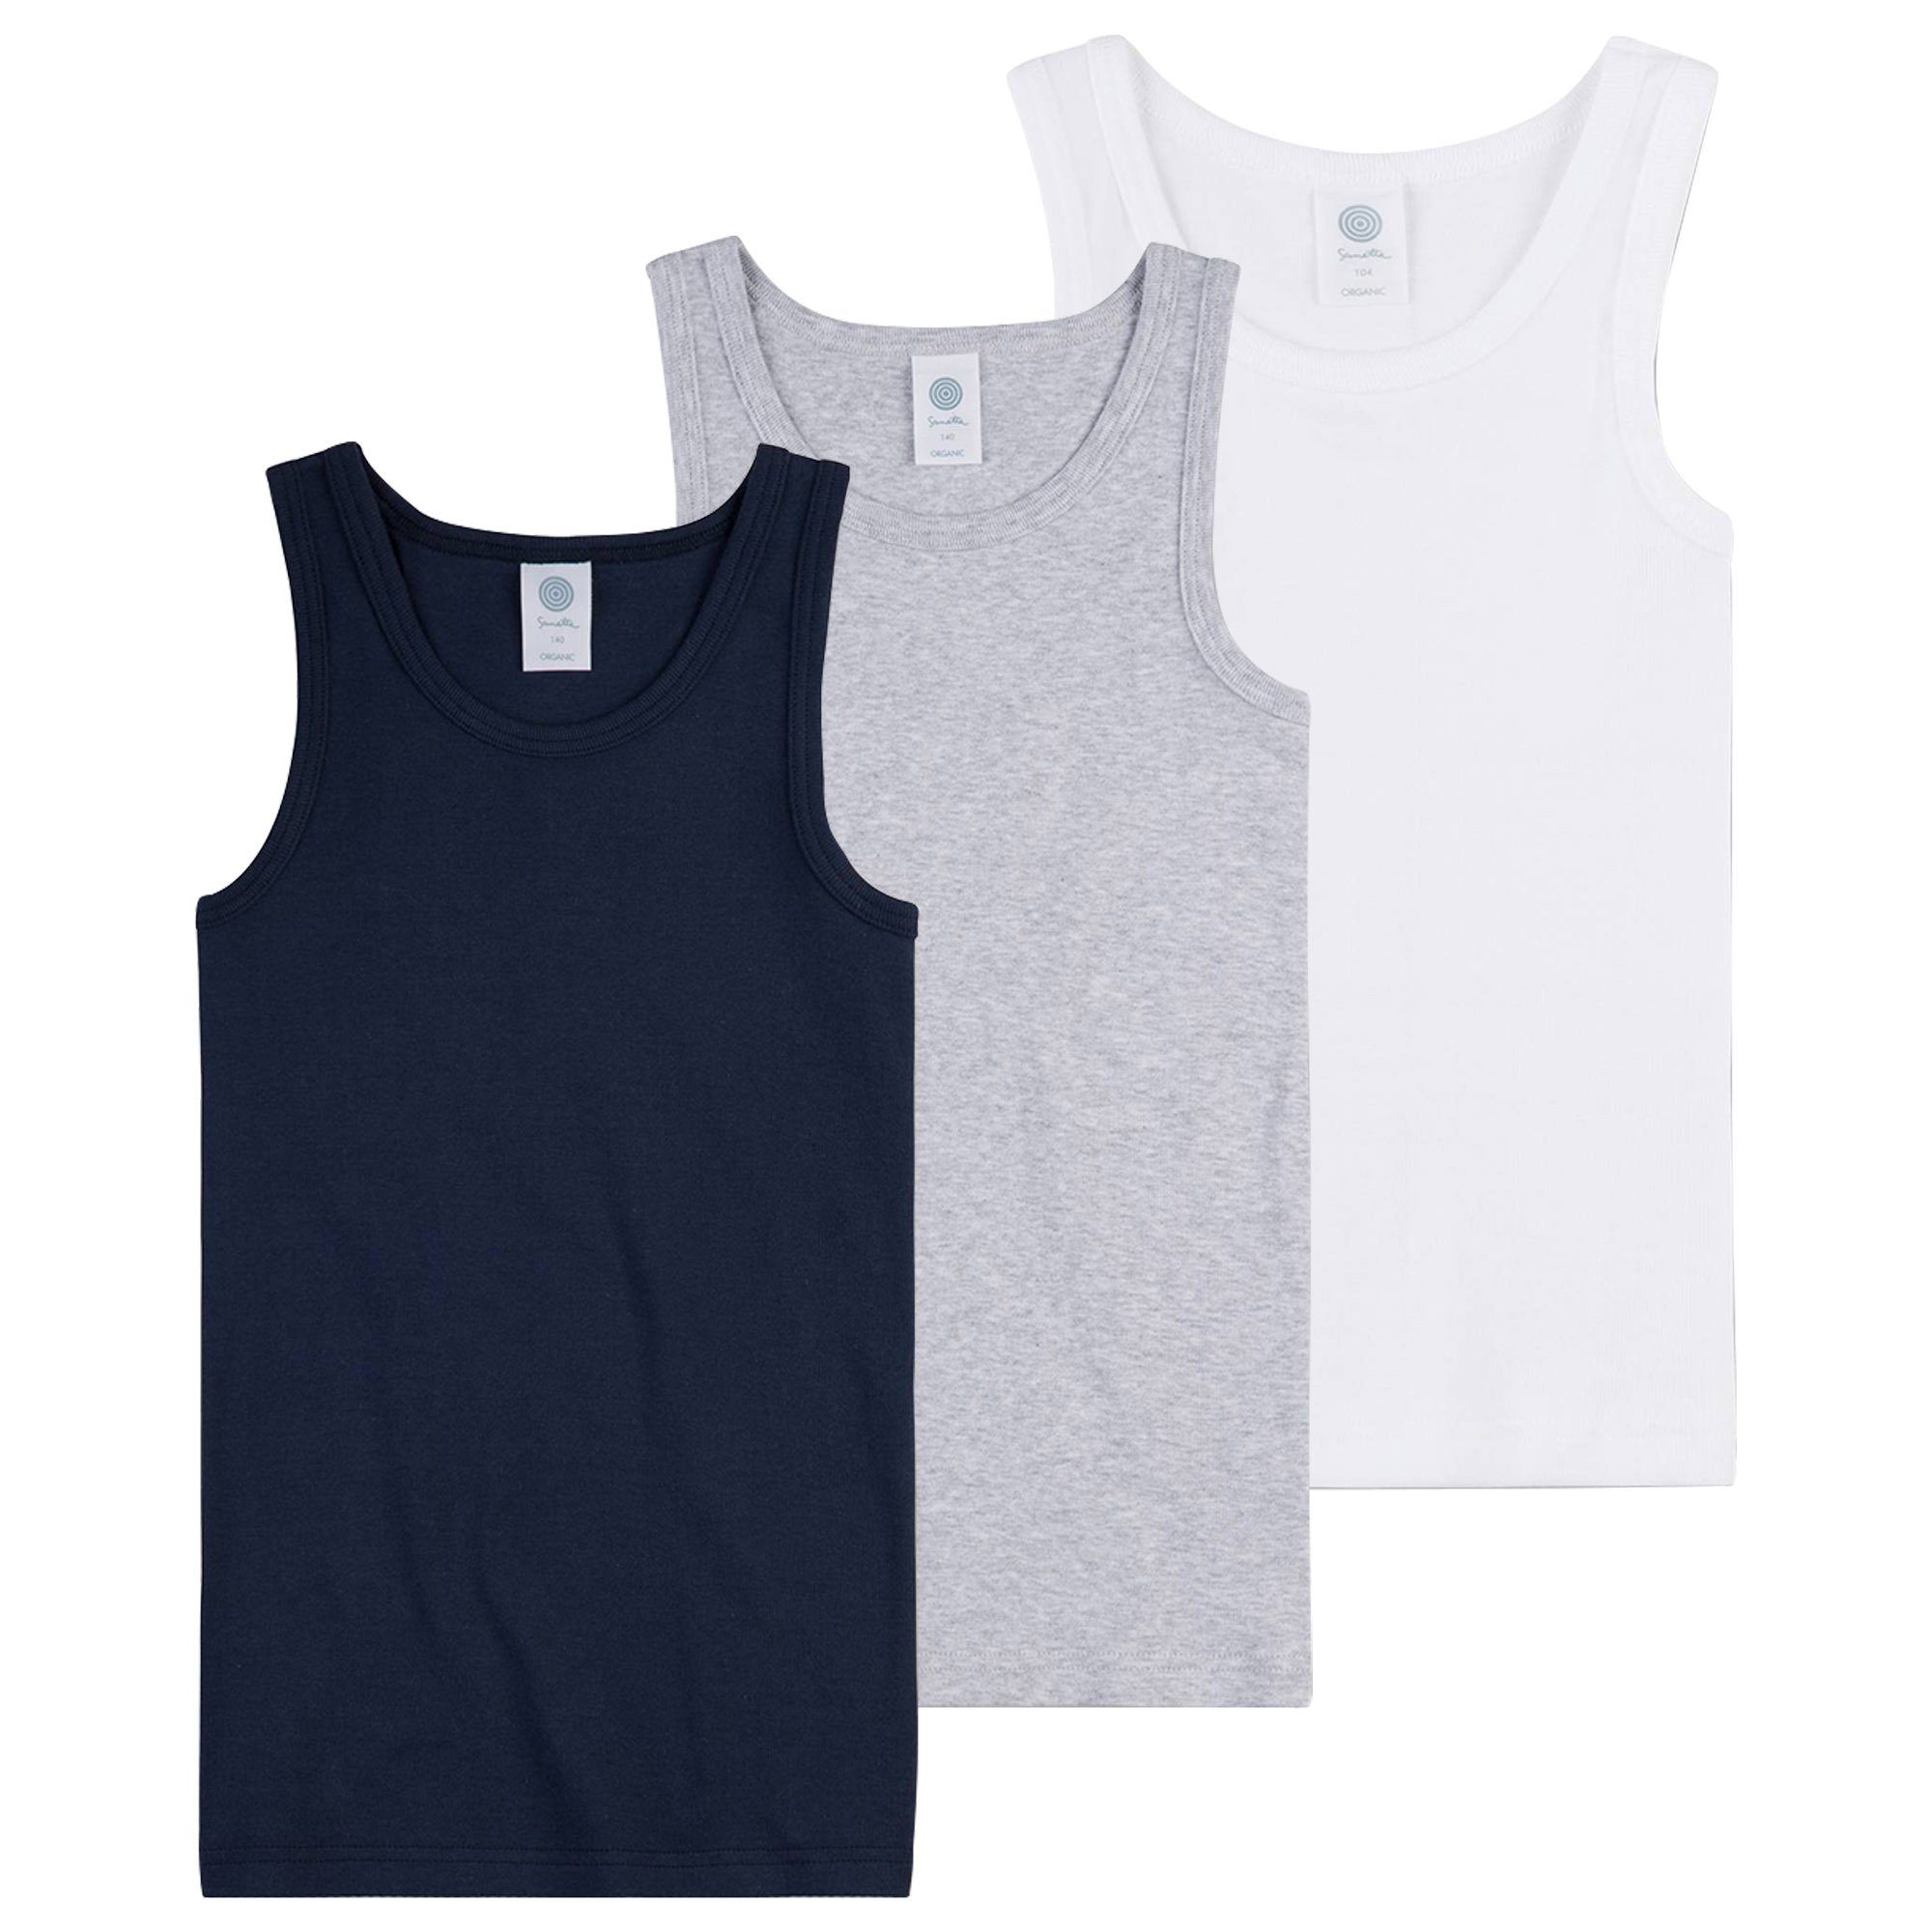 Sanetta Unterhemd Jungen Unterhemden 3er Pack Shirts ohne Arm Top Mehrfarbig